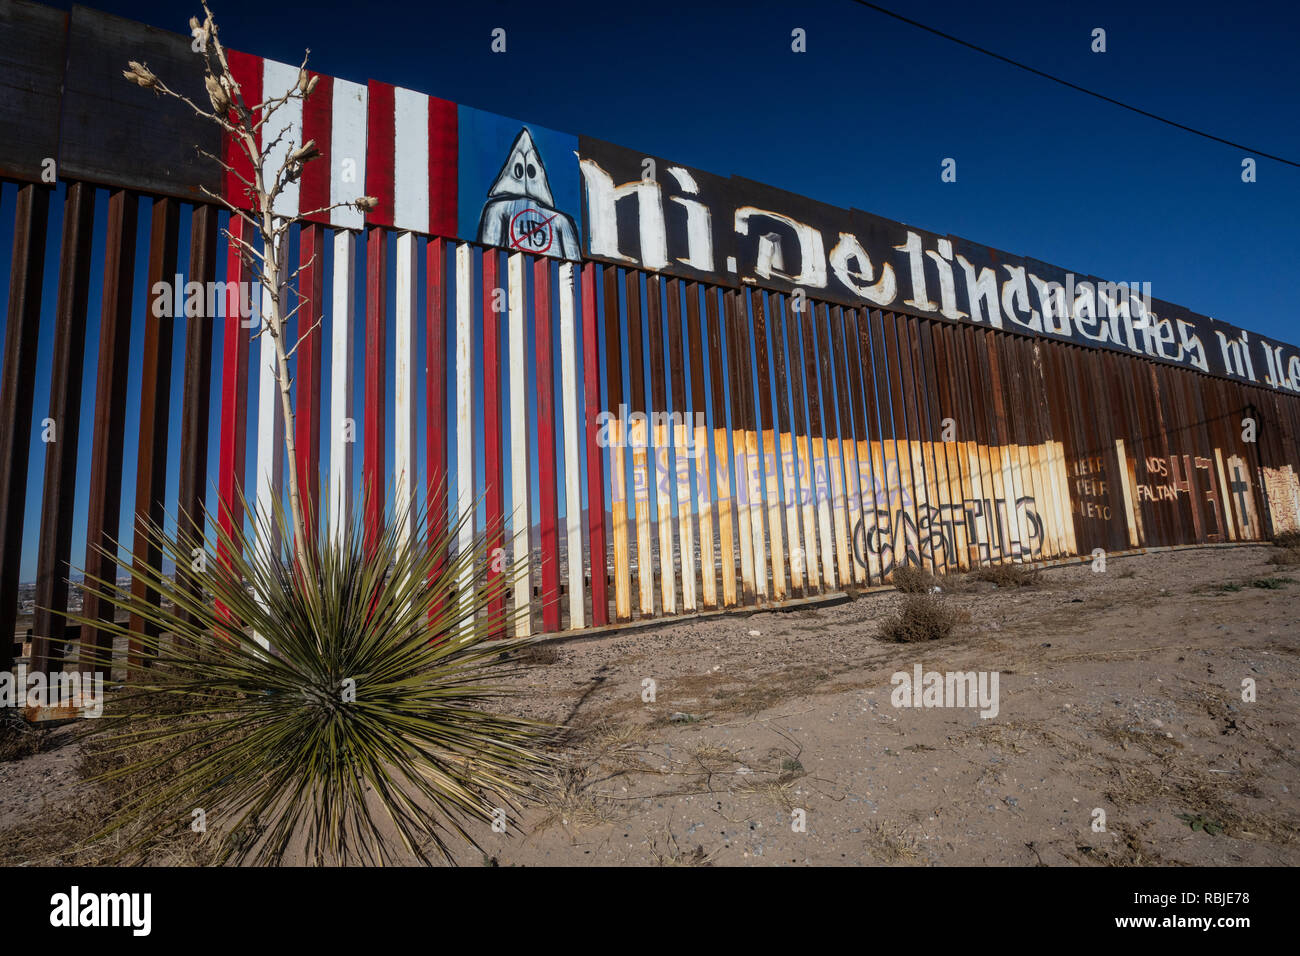 United States Grenzzaun zwischen El Paso Texas und Juarez Chihuahua von der mexikanischen Seite, mit Anti-Trump protest Wandbild gesehen. Januar 2019. Stockfoto